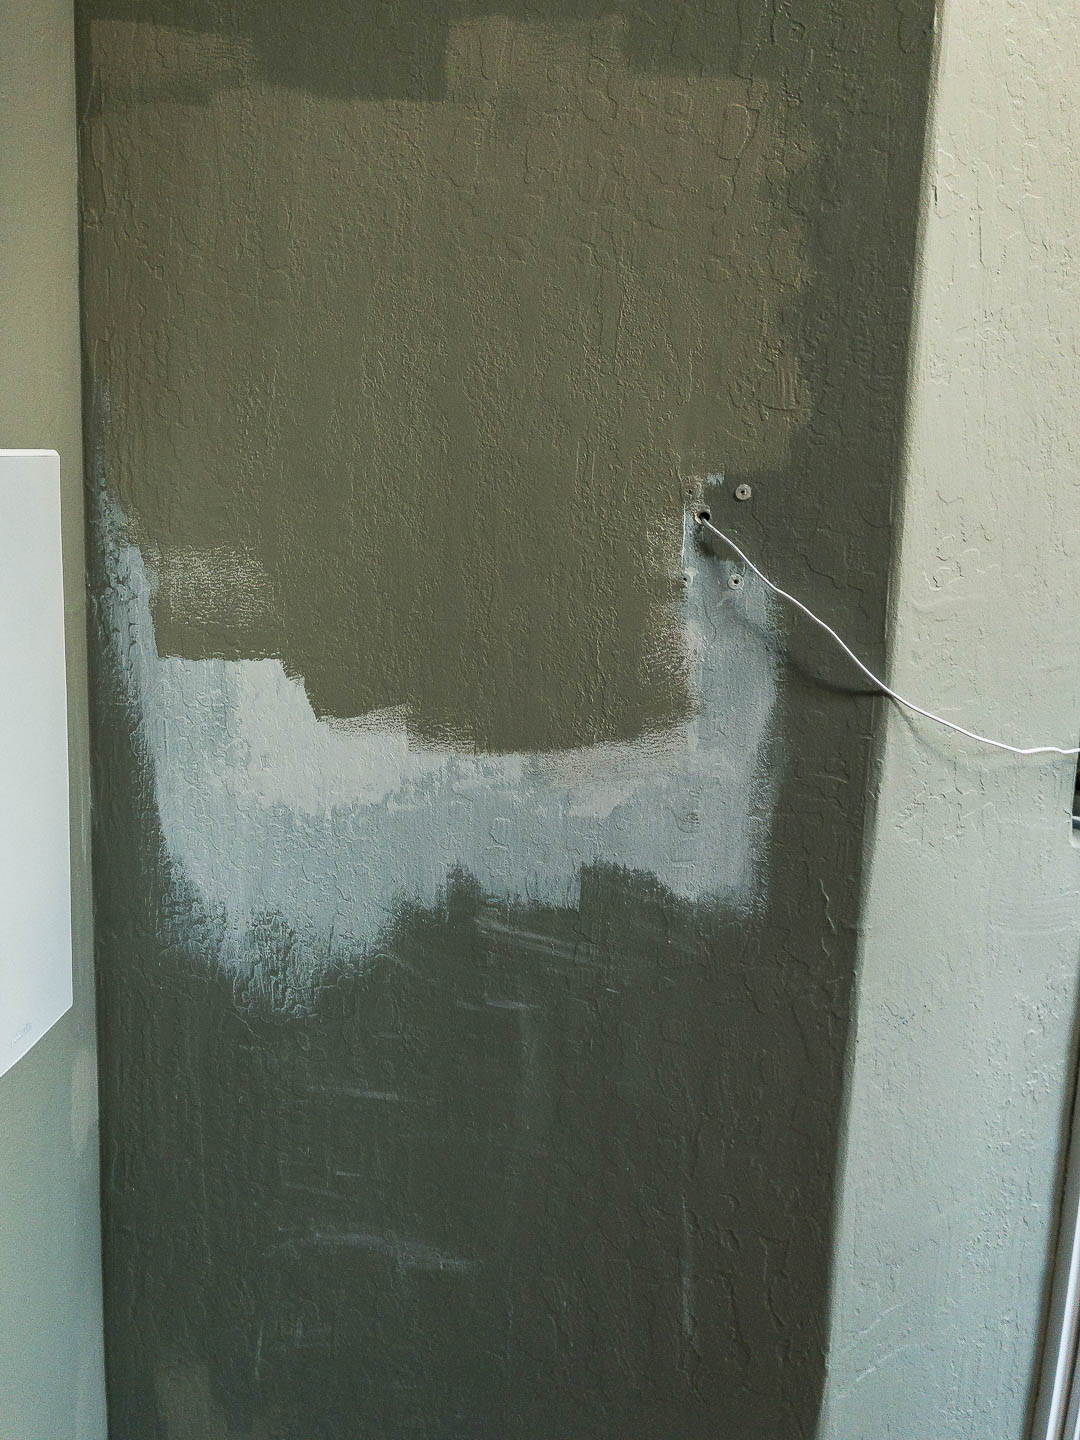 Drywall Repair - Spackle and Paint